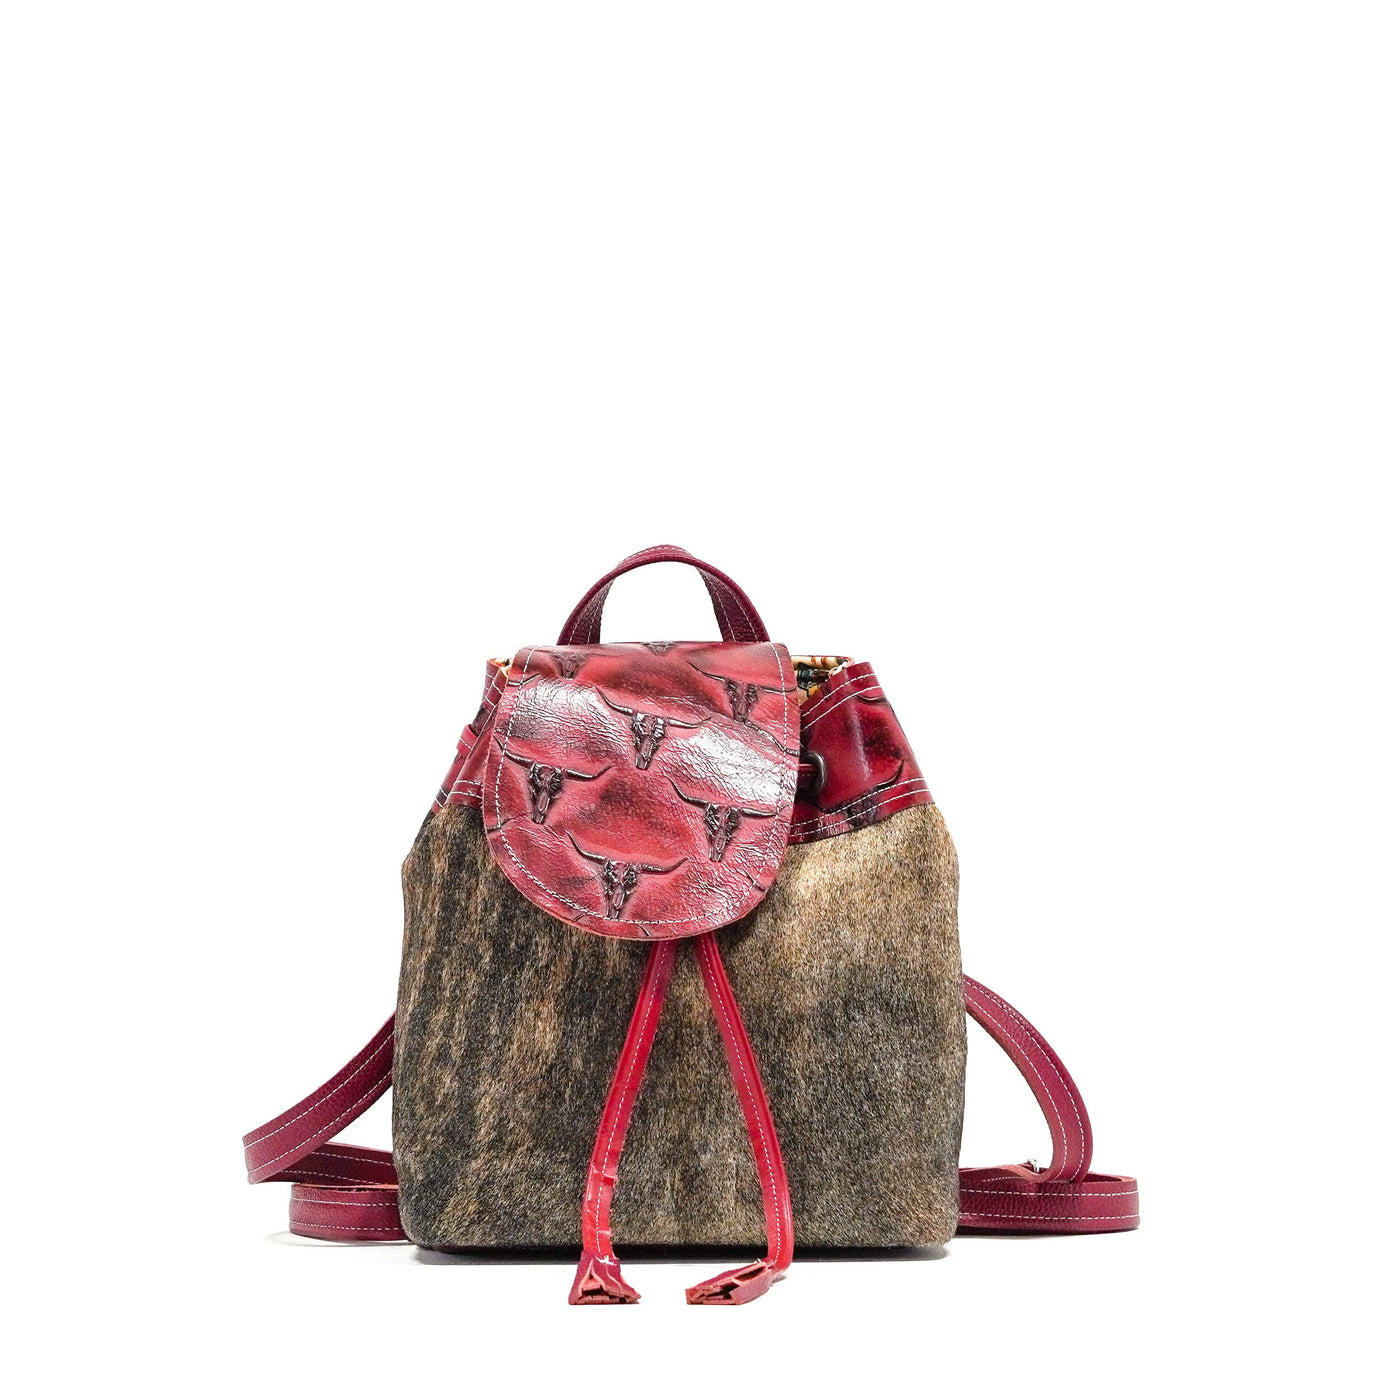 Mini Kelsea Backpack - Dusty Brindle w/ Burgundy Skulls-Mini Kelsea Backpack-Western-Cowhide-Bags-Handmade-Products-Gifts-Dancing Cactus Designs